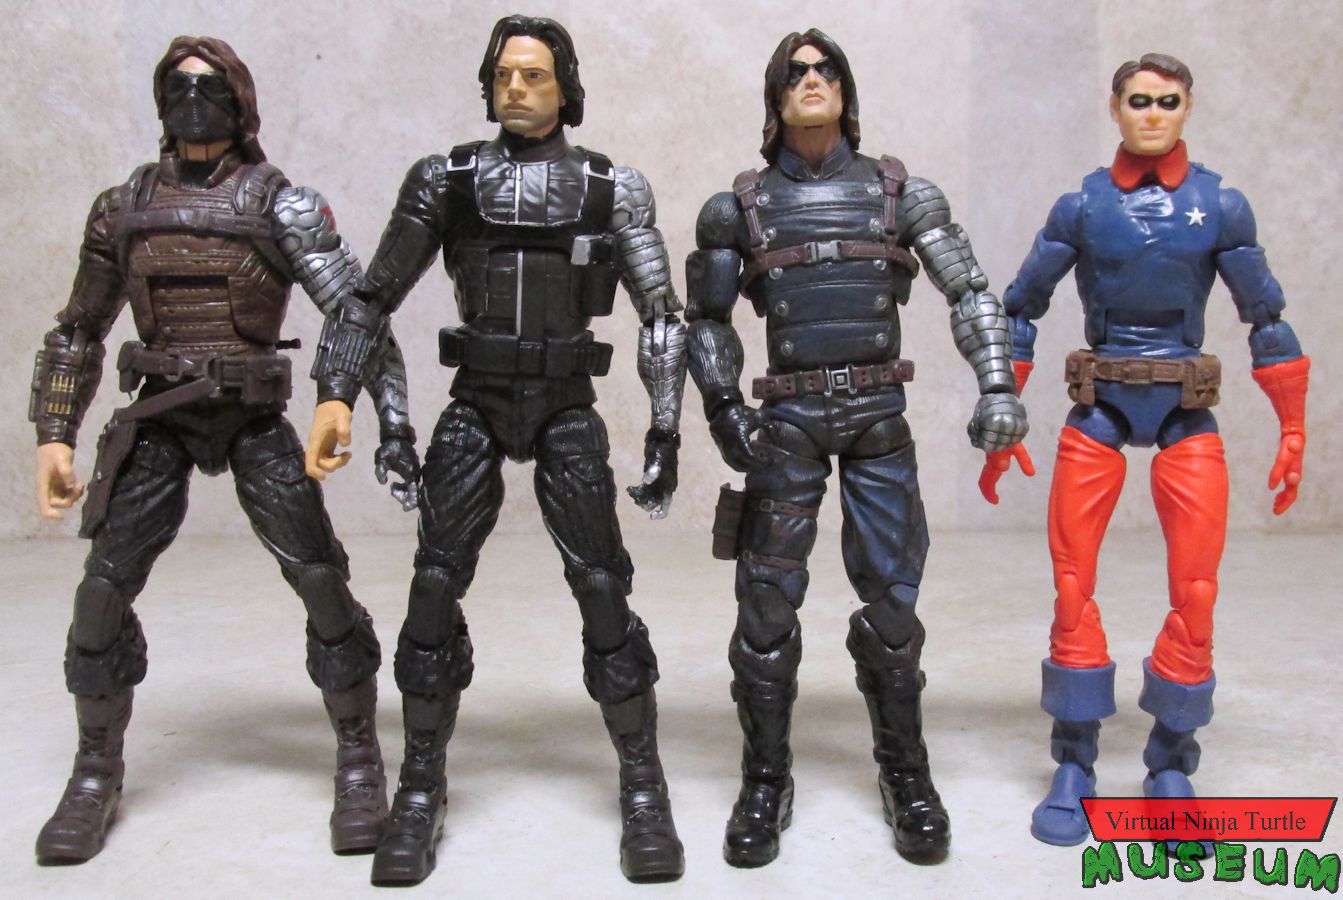 Winter Soldier/Bucky figures